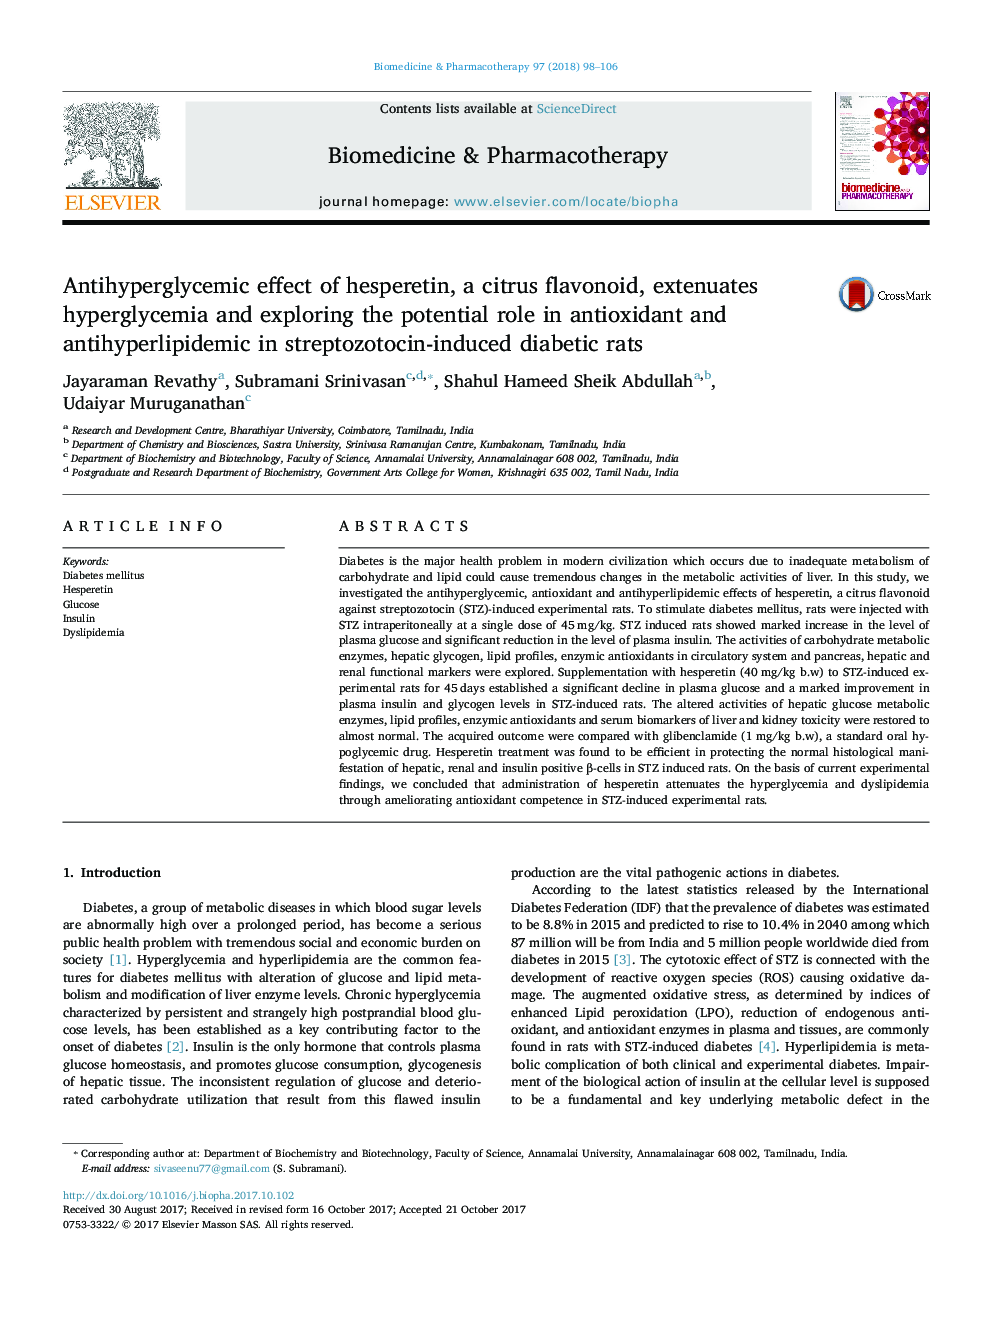 اثر آنتیپیرگلیسمی هسپرتین، فلاونوئید مرکبات، کاهش هیپرگلیسمی و بررسی نقش بالقوه آنتی اکسیدان و آنتی هپرولیپیدمی در موش های صحرایی دیابتی ناشی از استرپتوزوتوسین 